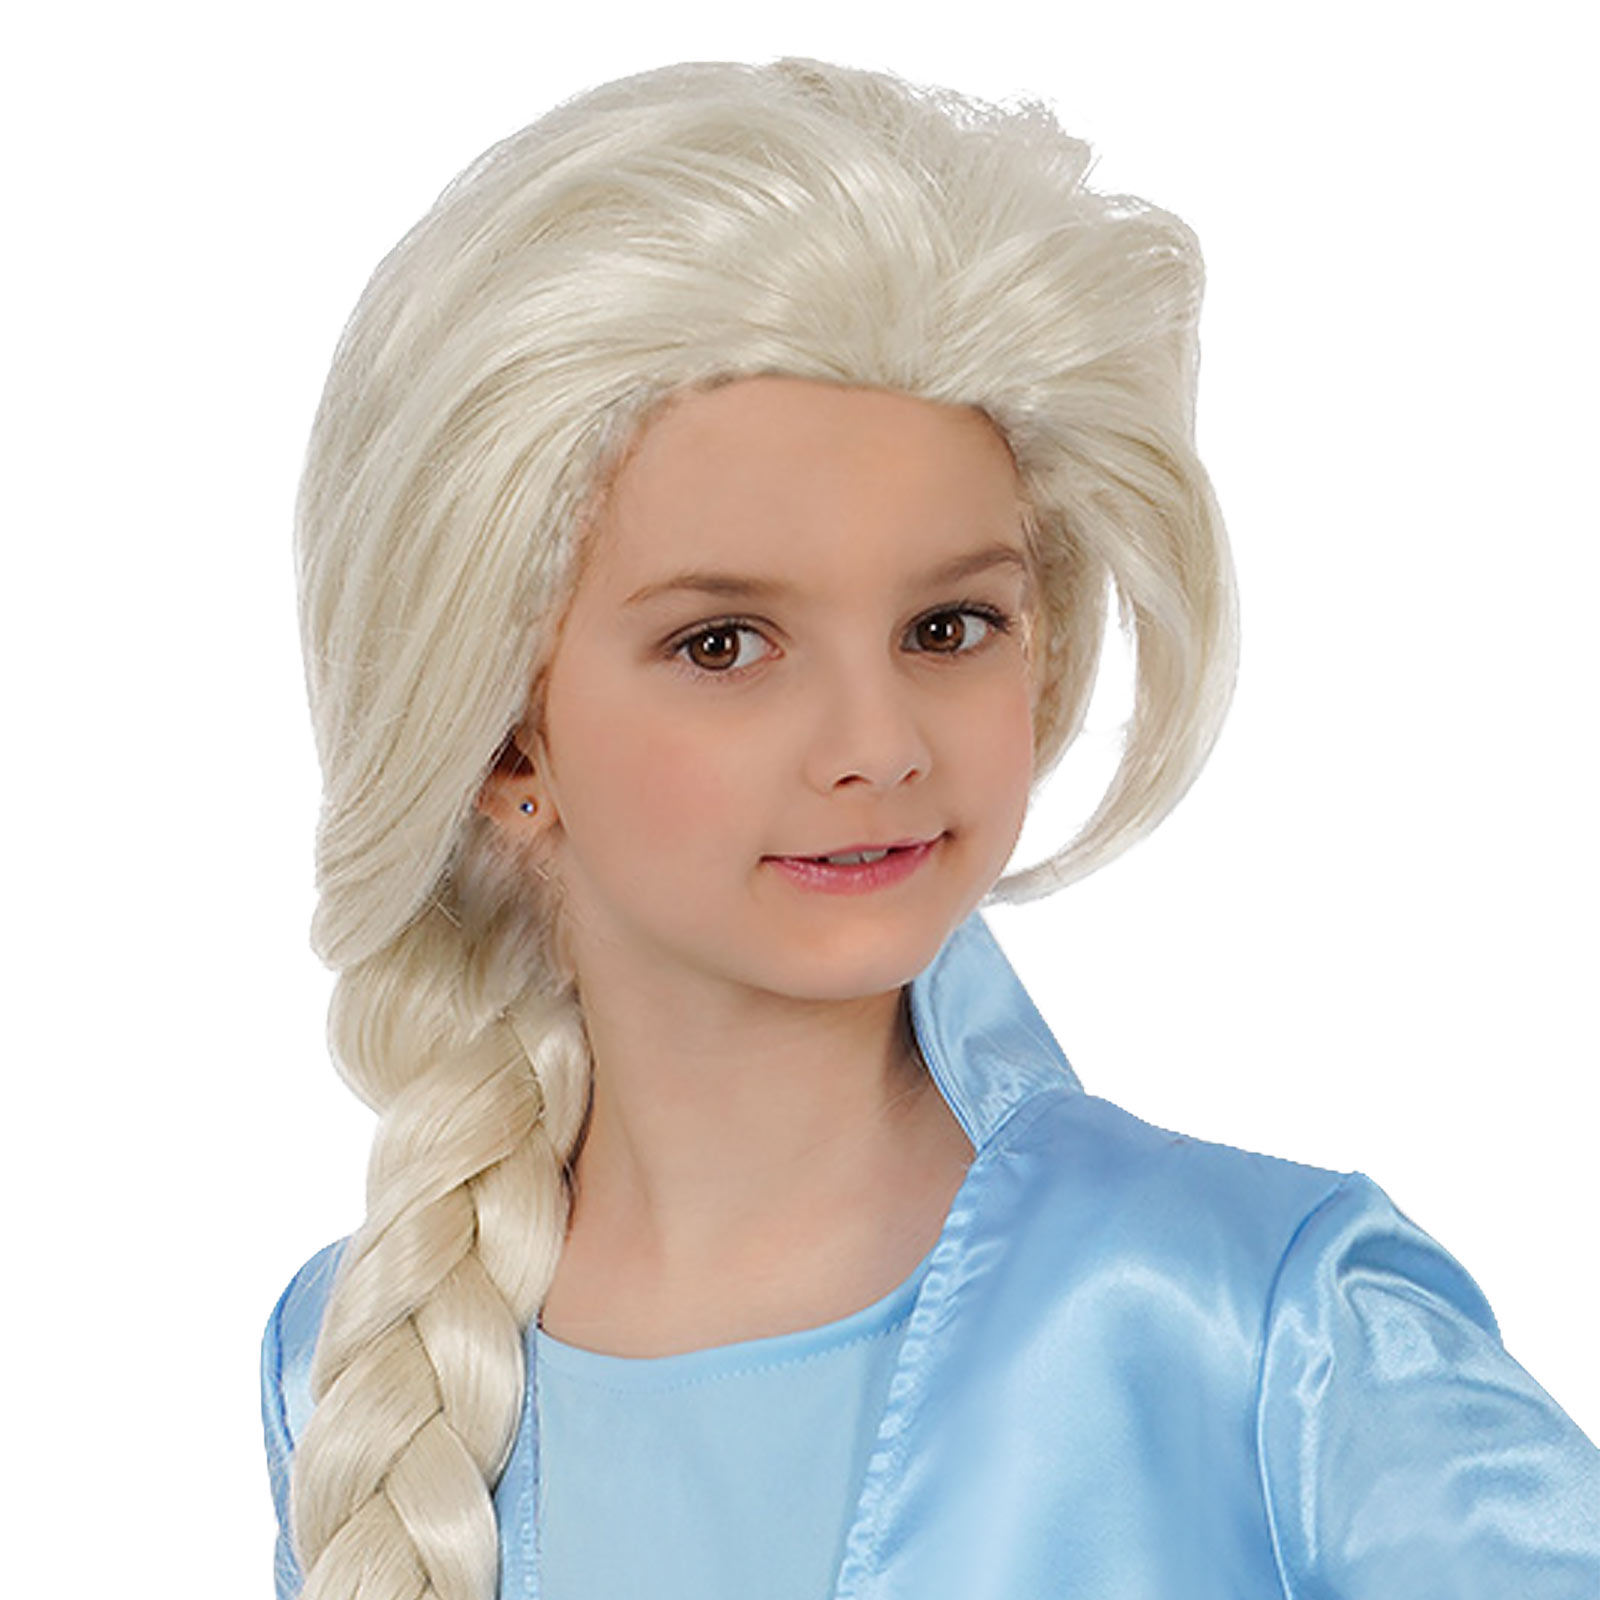 Elsa Kinderkostuum Pruik voor Frozen Fans